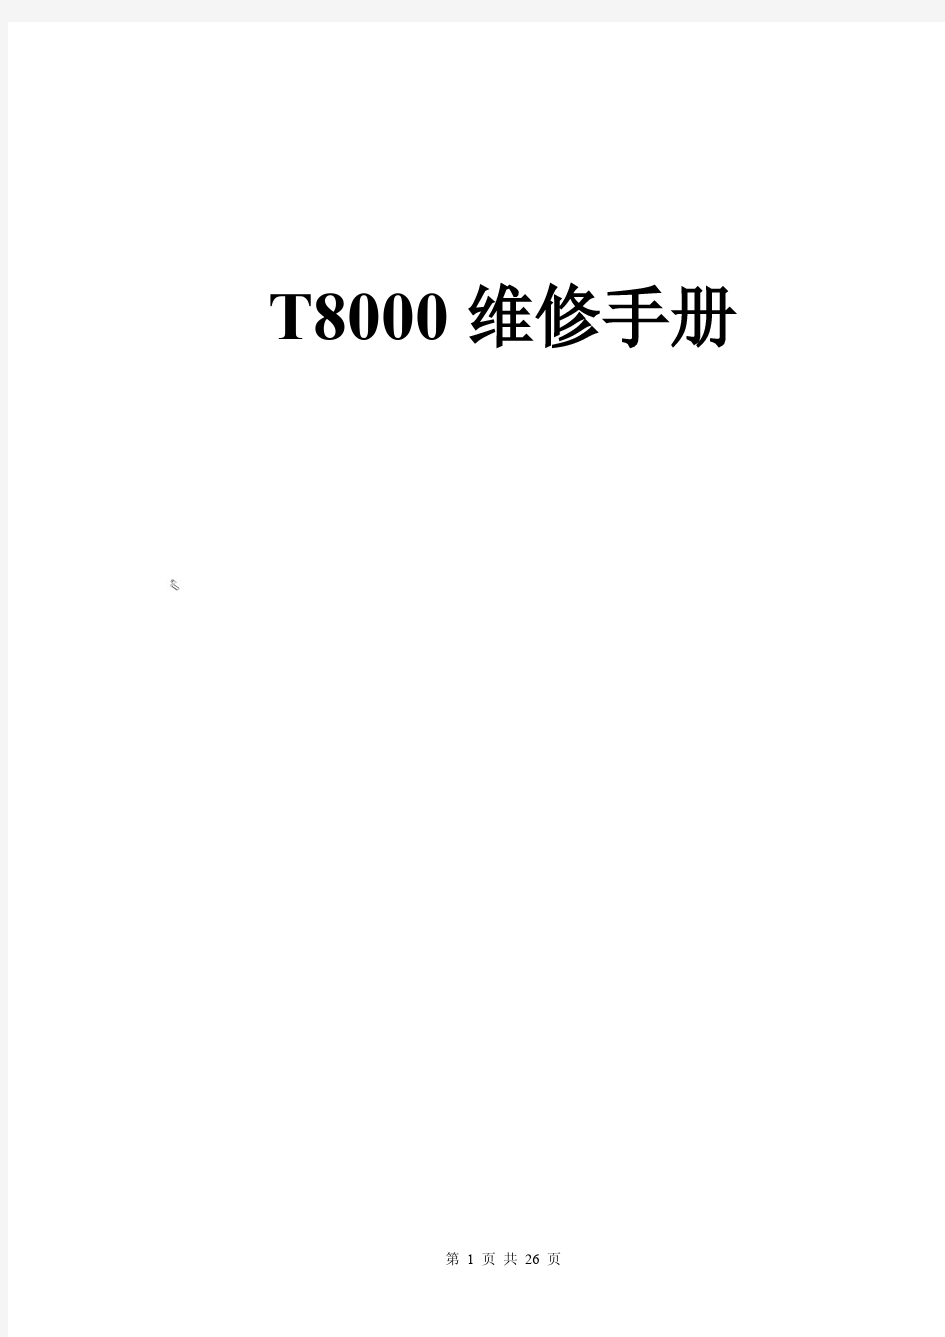 乔山跑步机 T8000维修手册